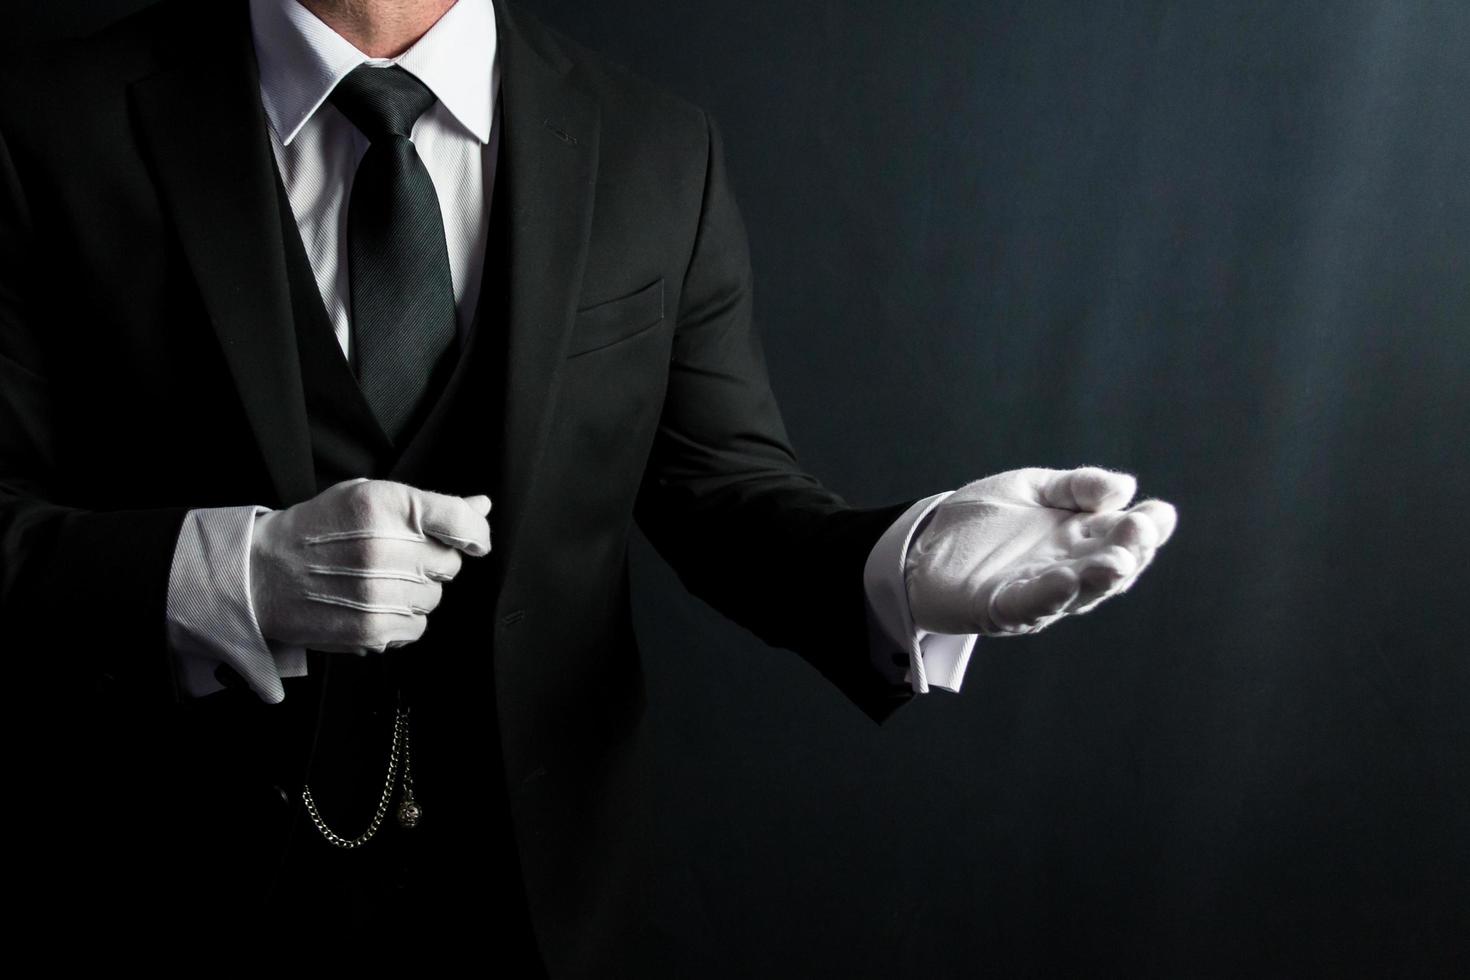 portret van butler in donker pak en wit handschoenen aanbieden helpen hand. concept van onderhoud industrie en professioneel beleefdheid. foto